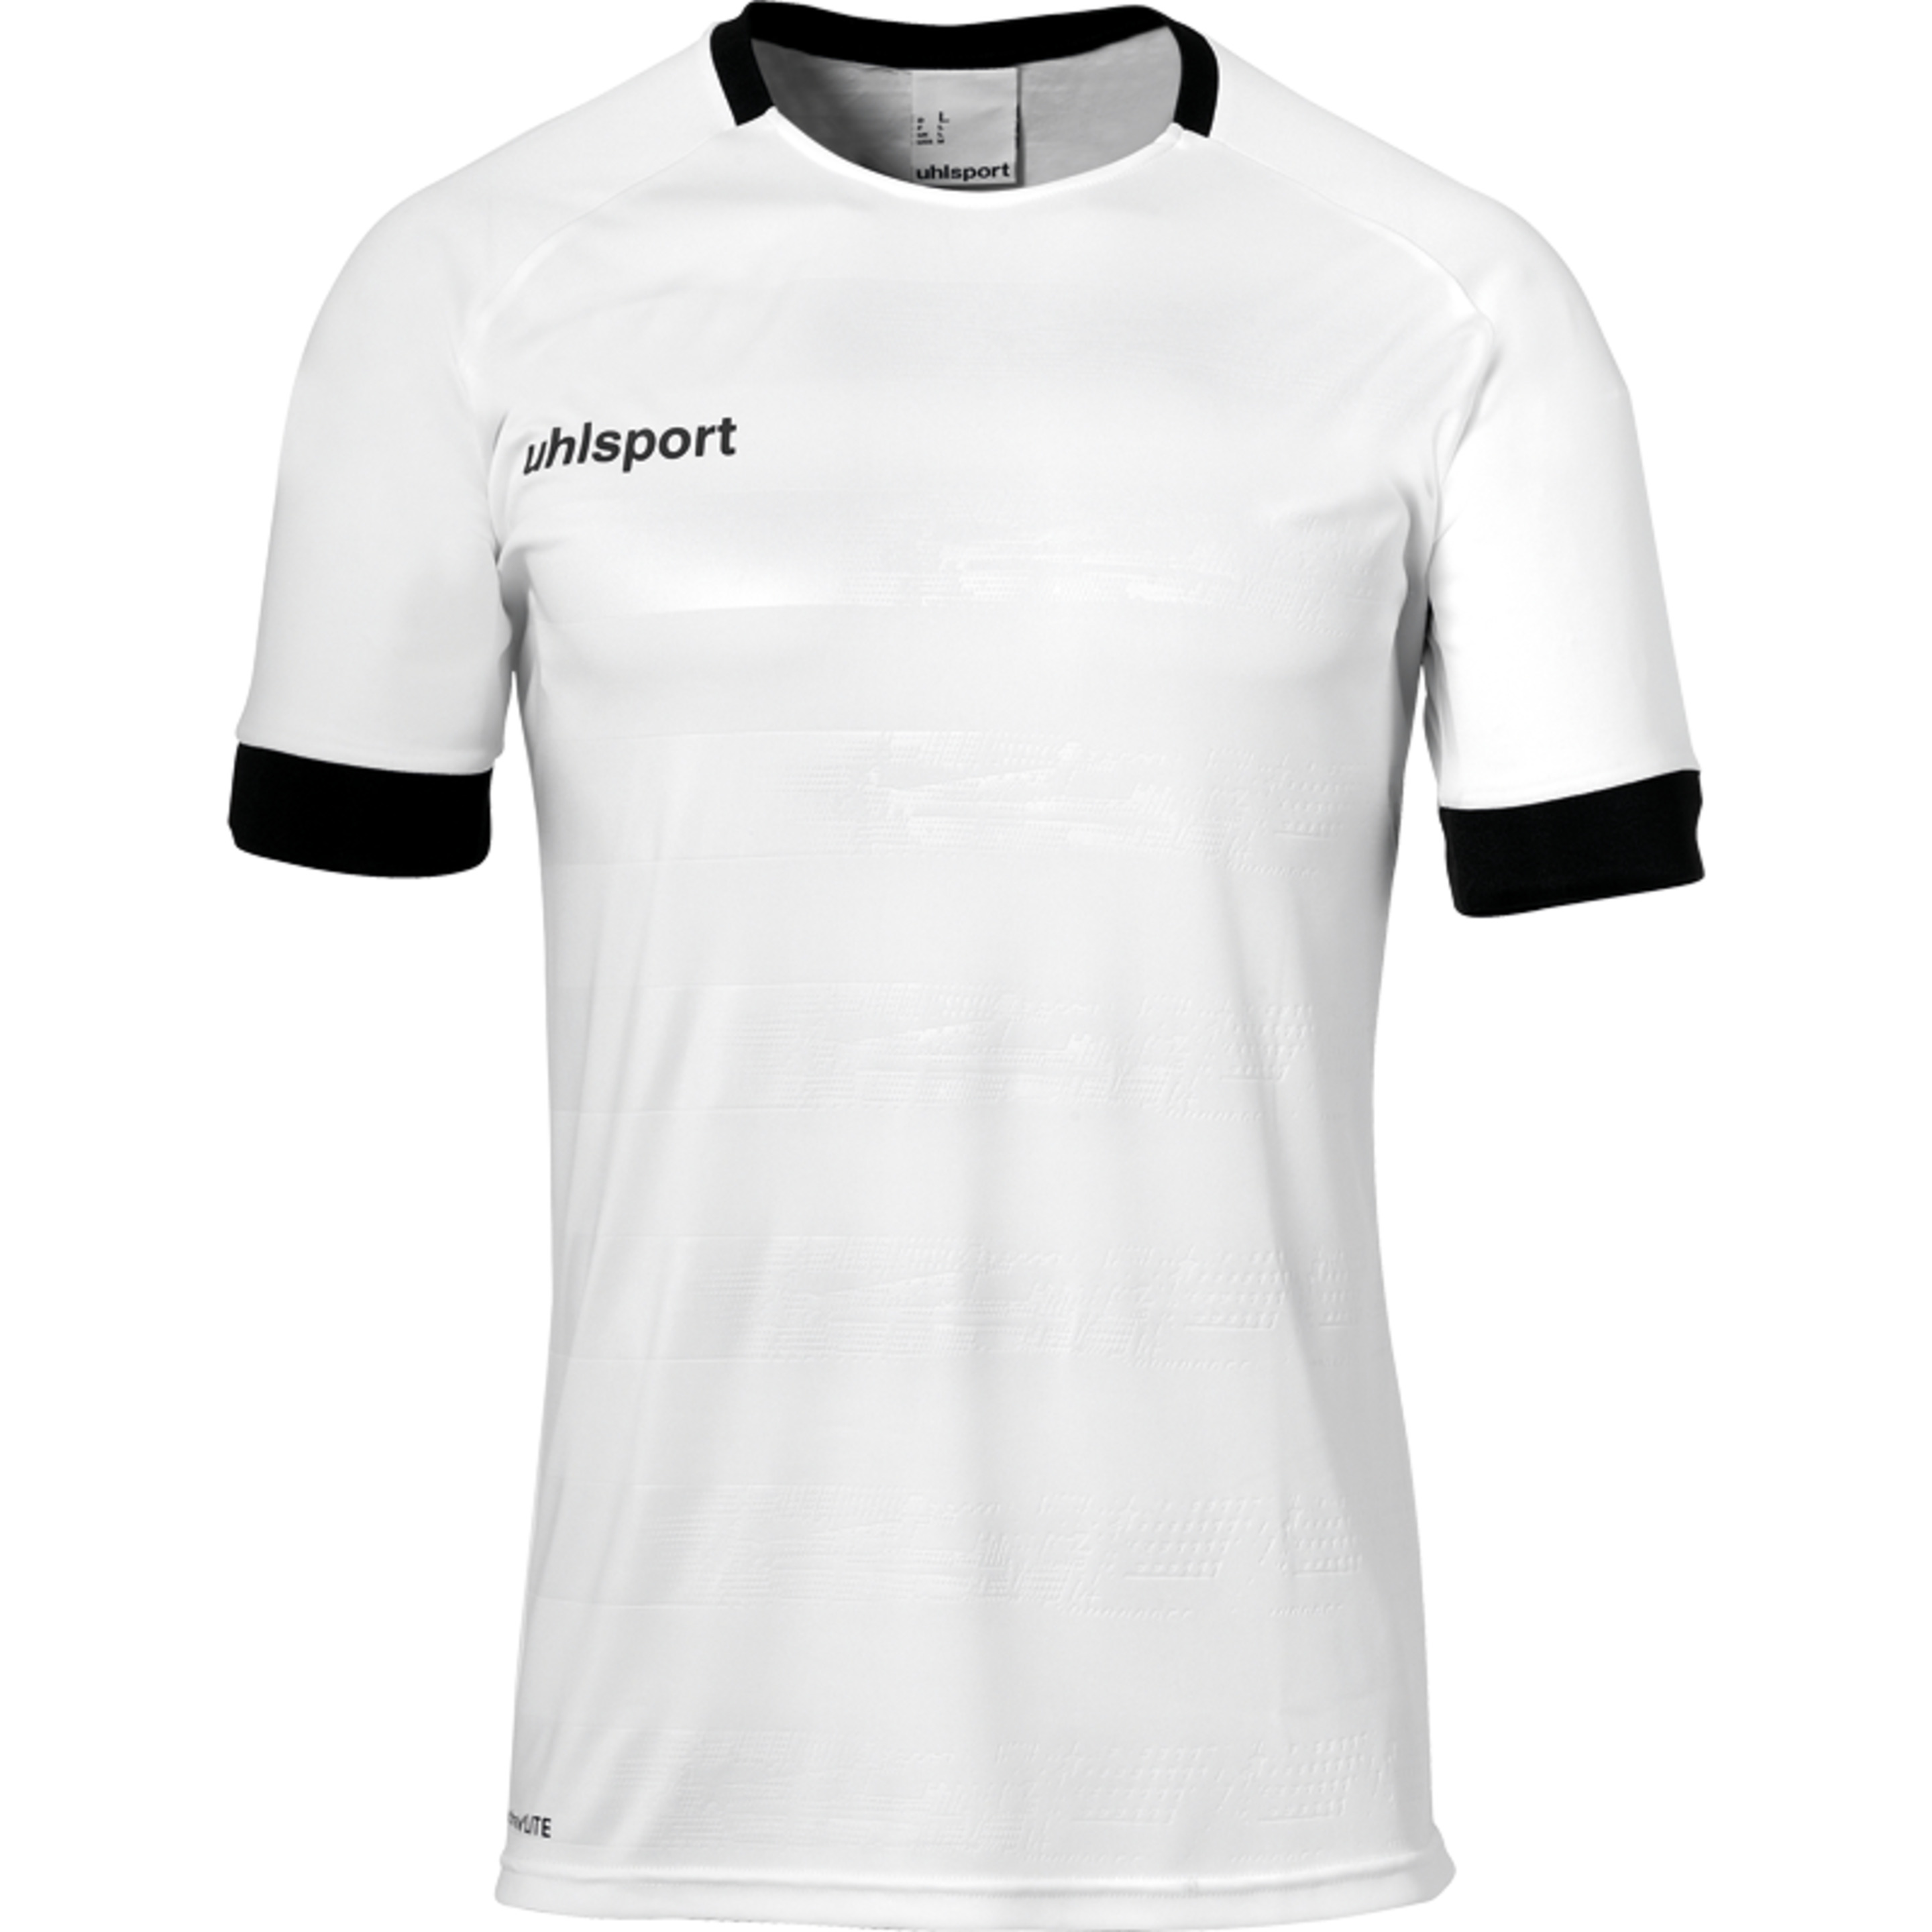 Division Ii Shirt Shortsleeved Blanco/negro Uhlsport